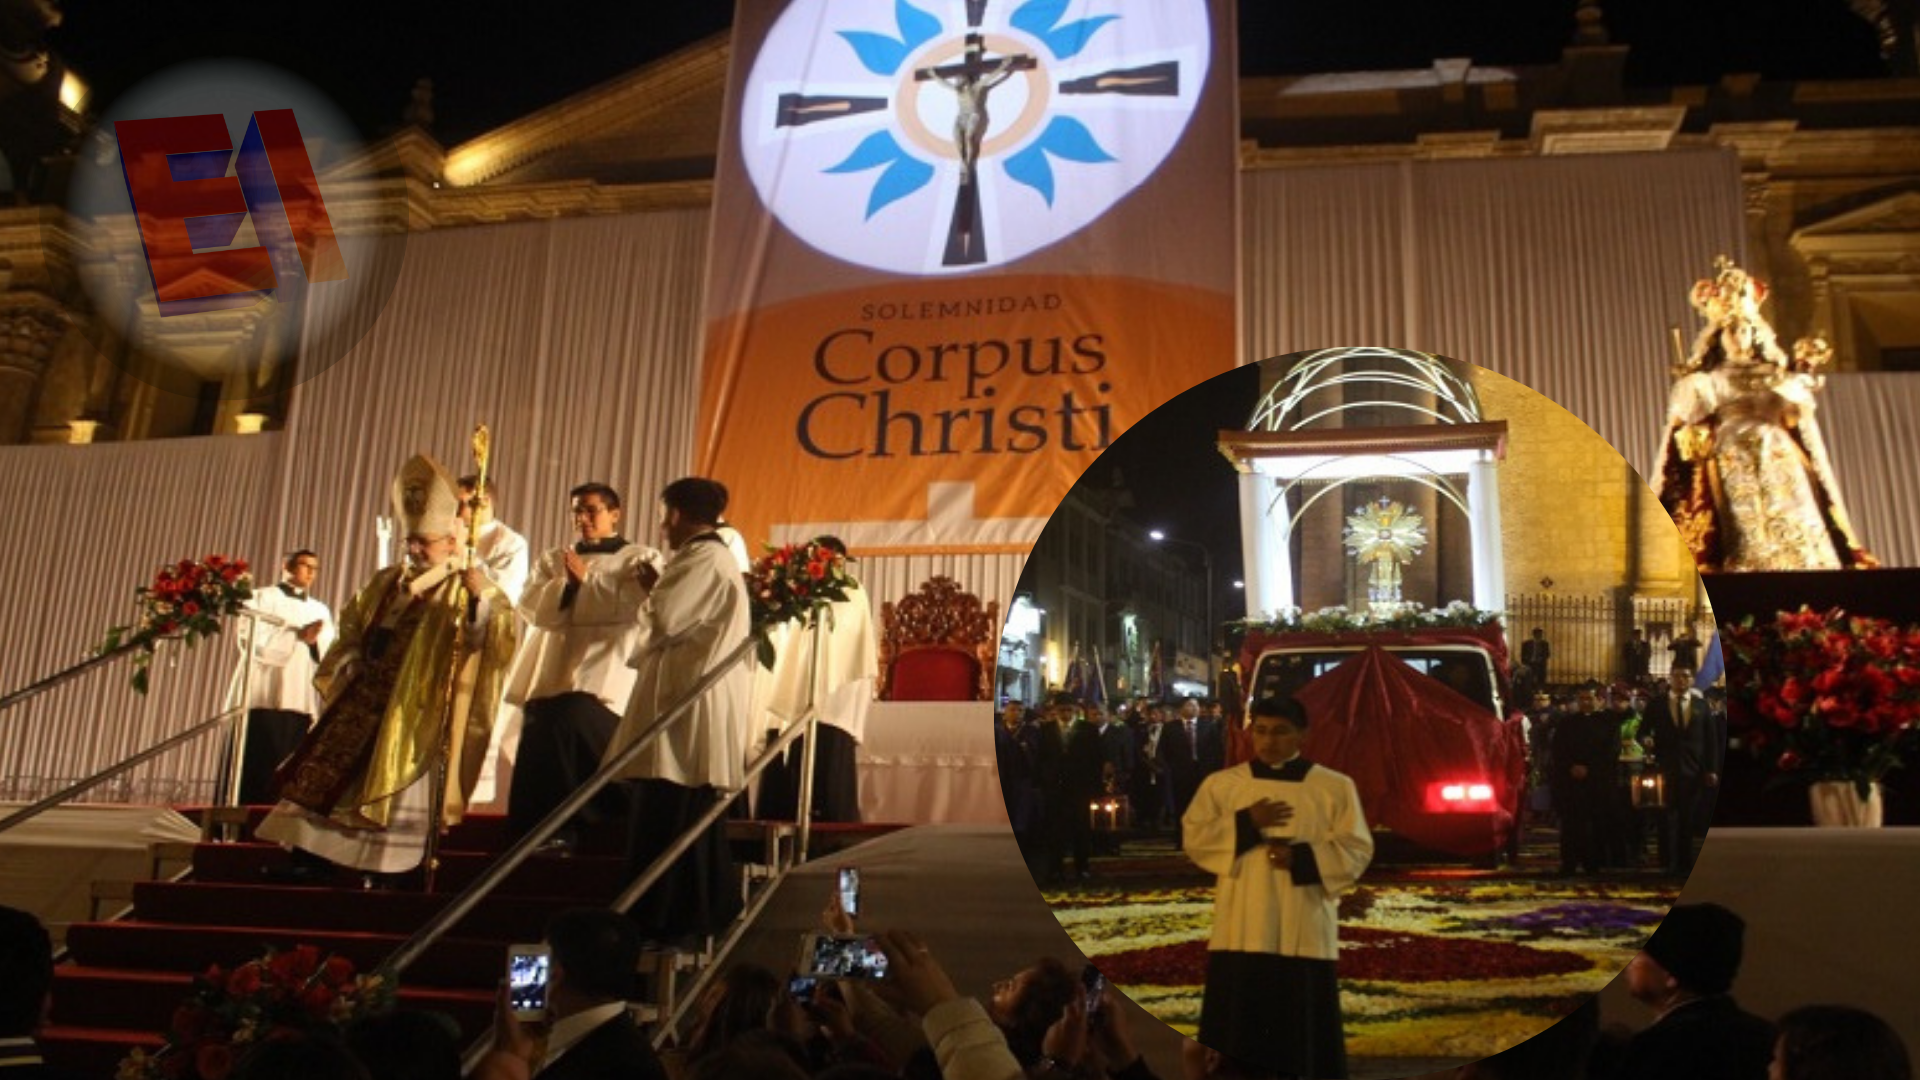 Misa y procesión por la solemnidad del Corpus Christi se realizará este 30 de mayo